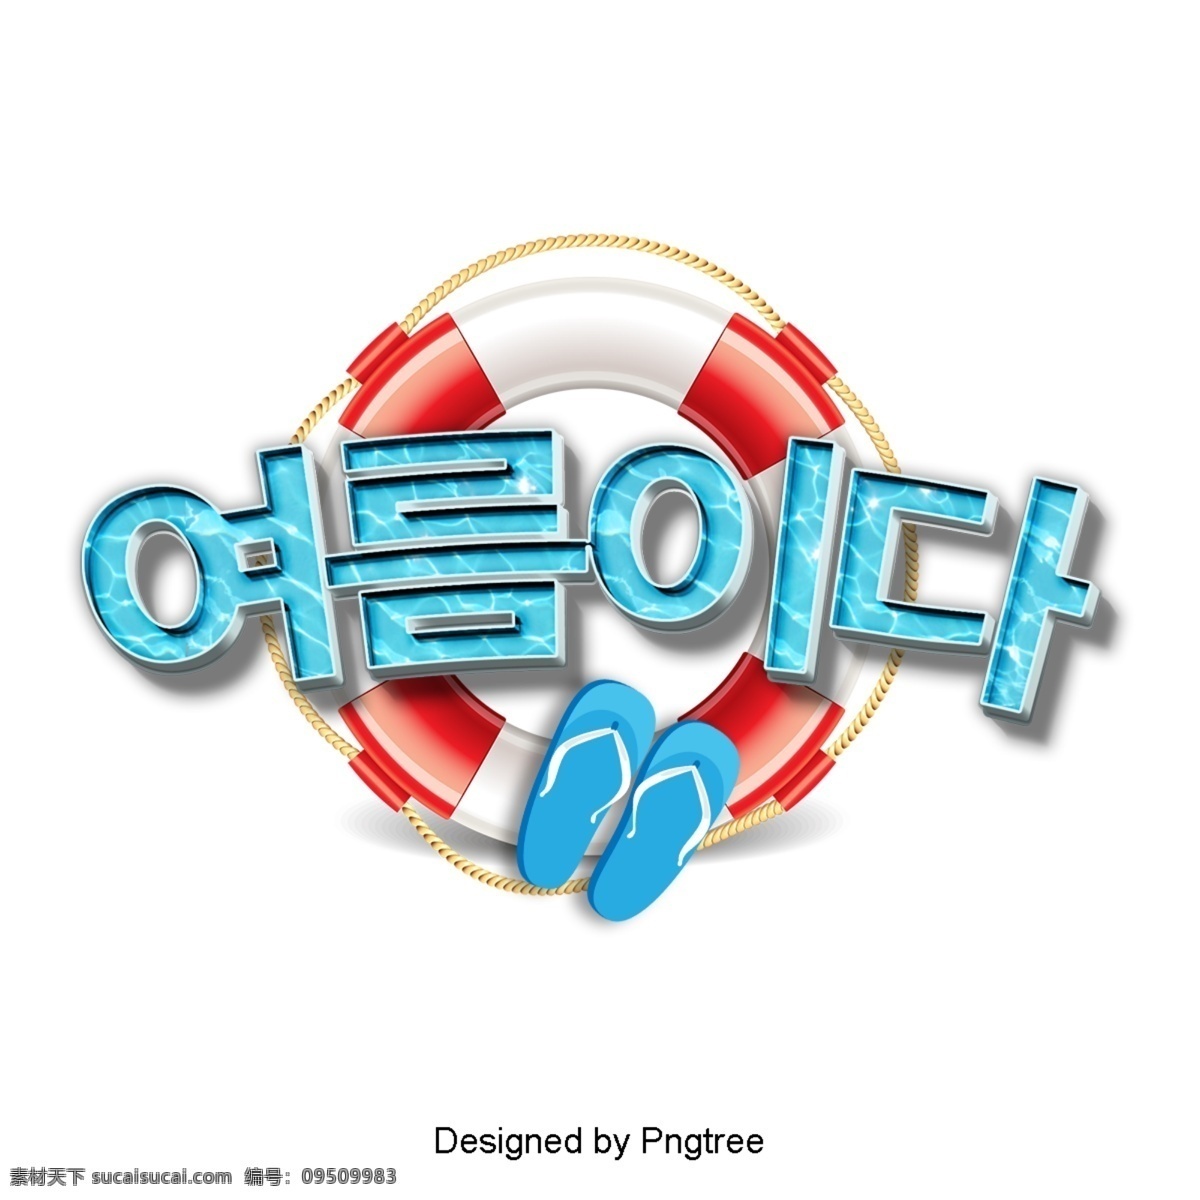 夏季 清新 时尚 场景 就是 装饰 字形 现场 三维字体 韩文 3d 立体 色彩假期 游泳 拖鞋